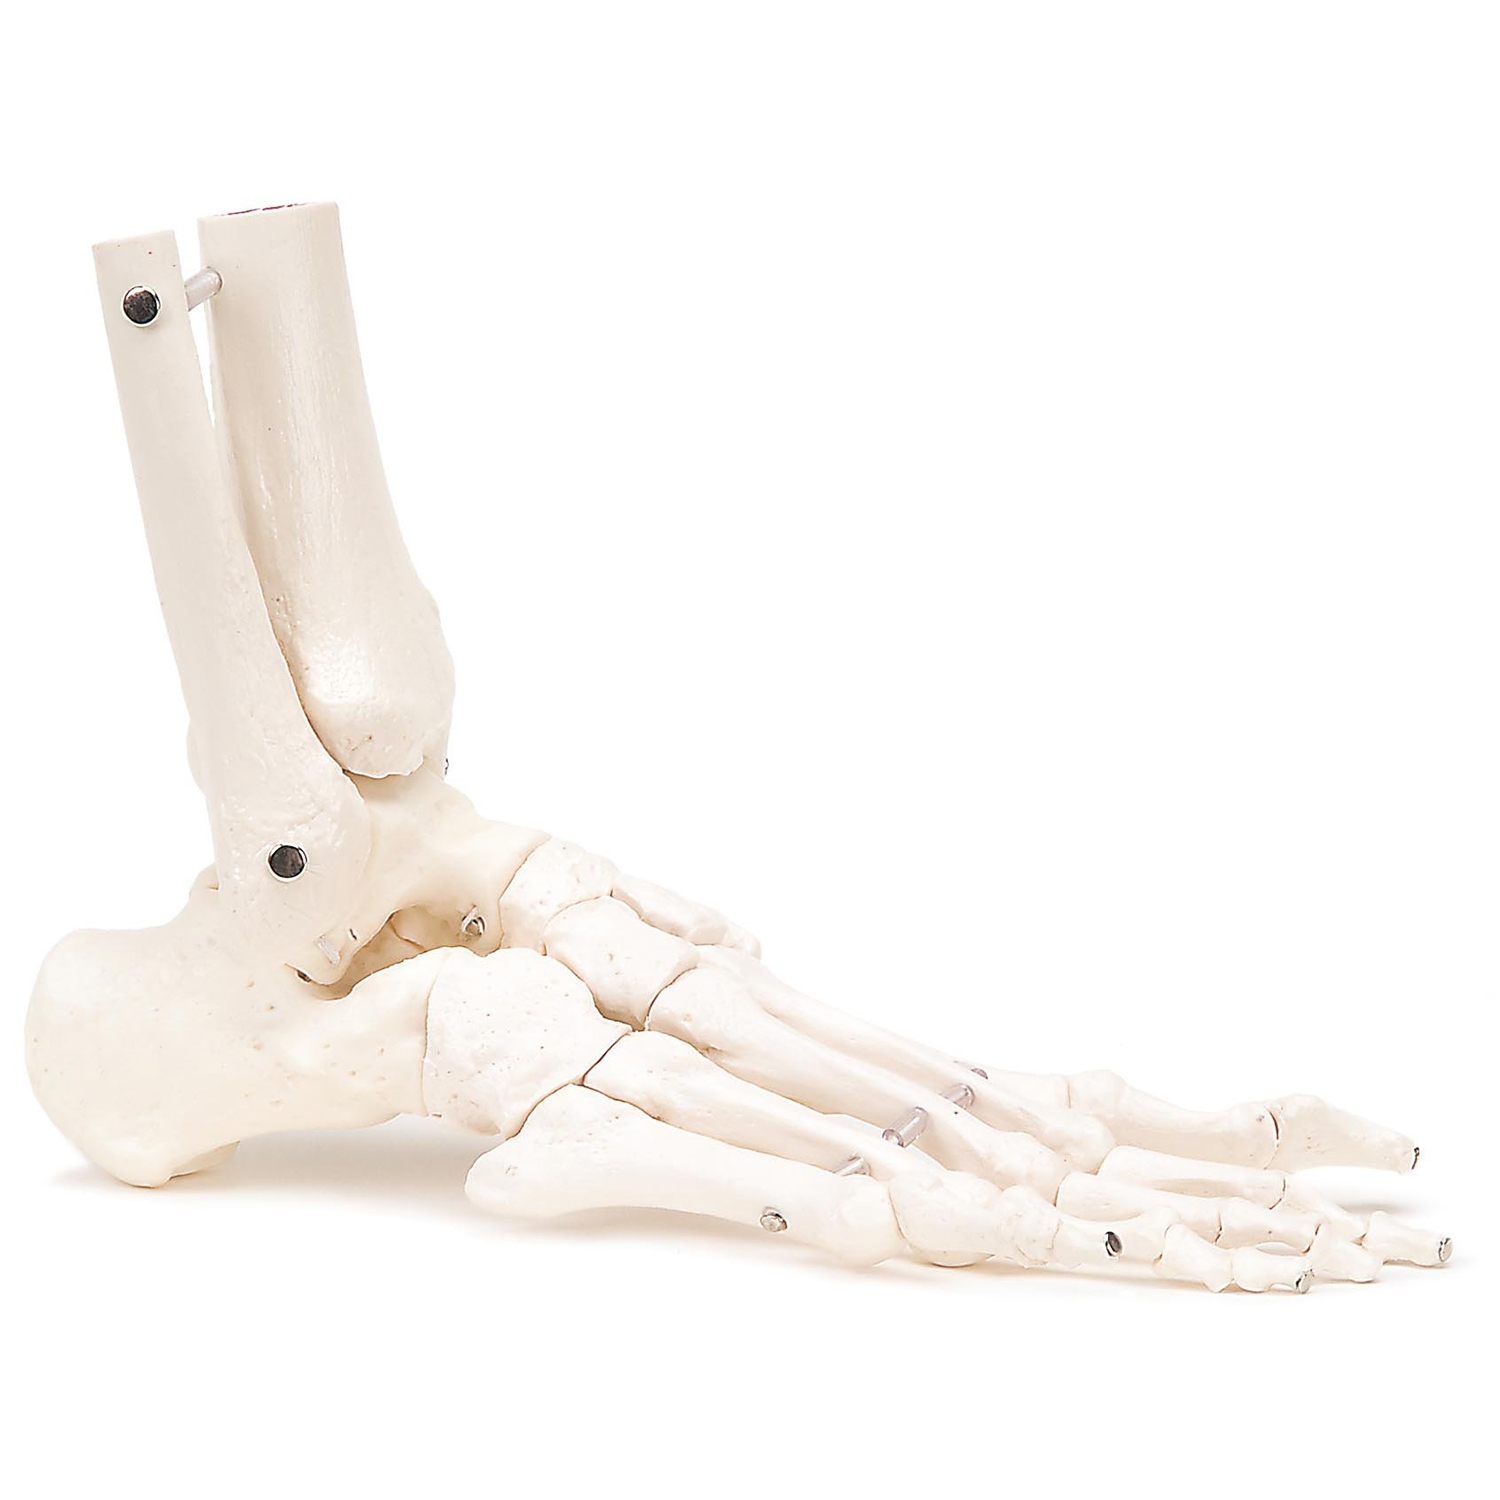 Squelette pied et jambes - droite